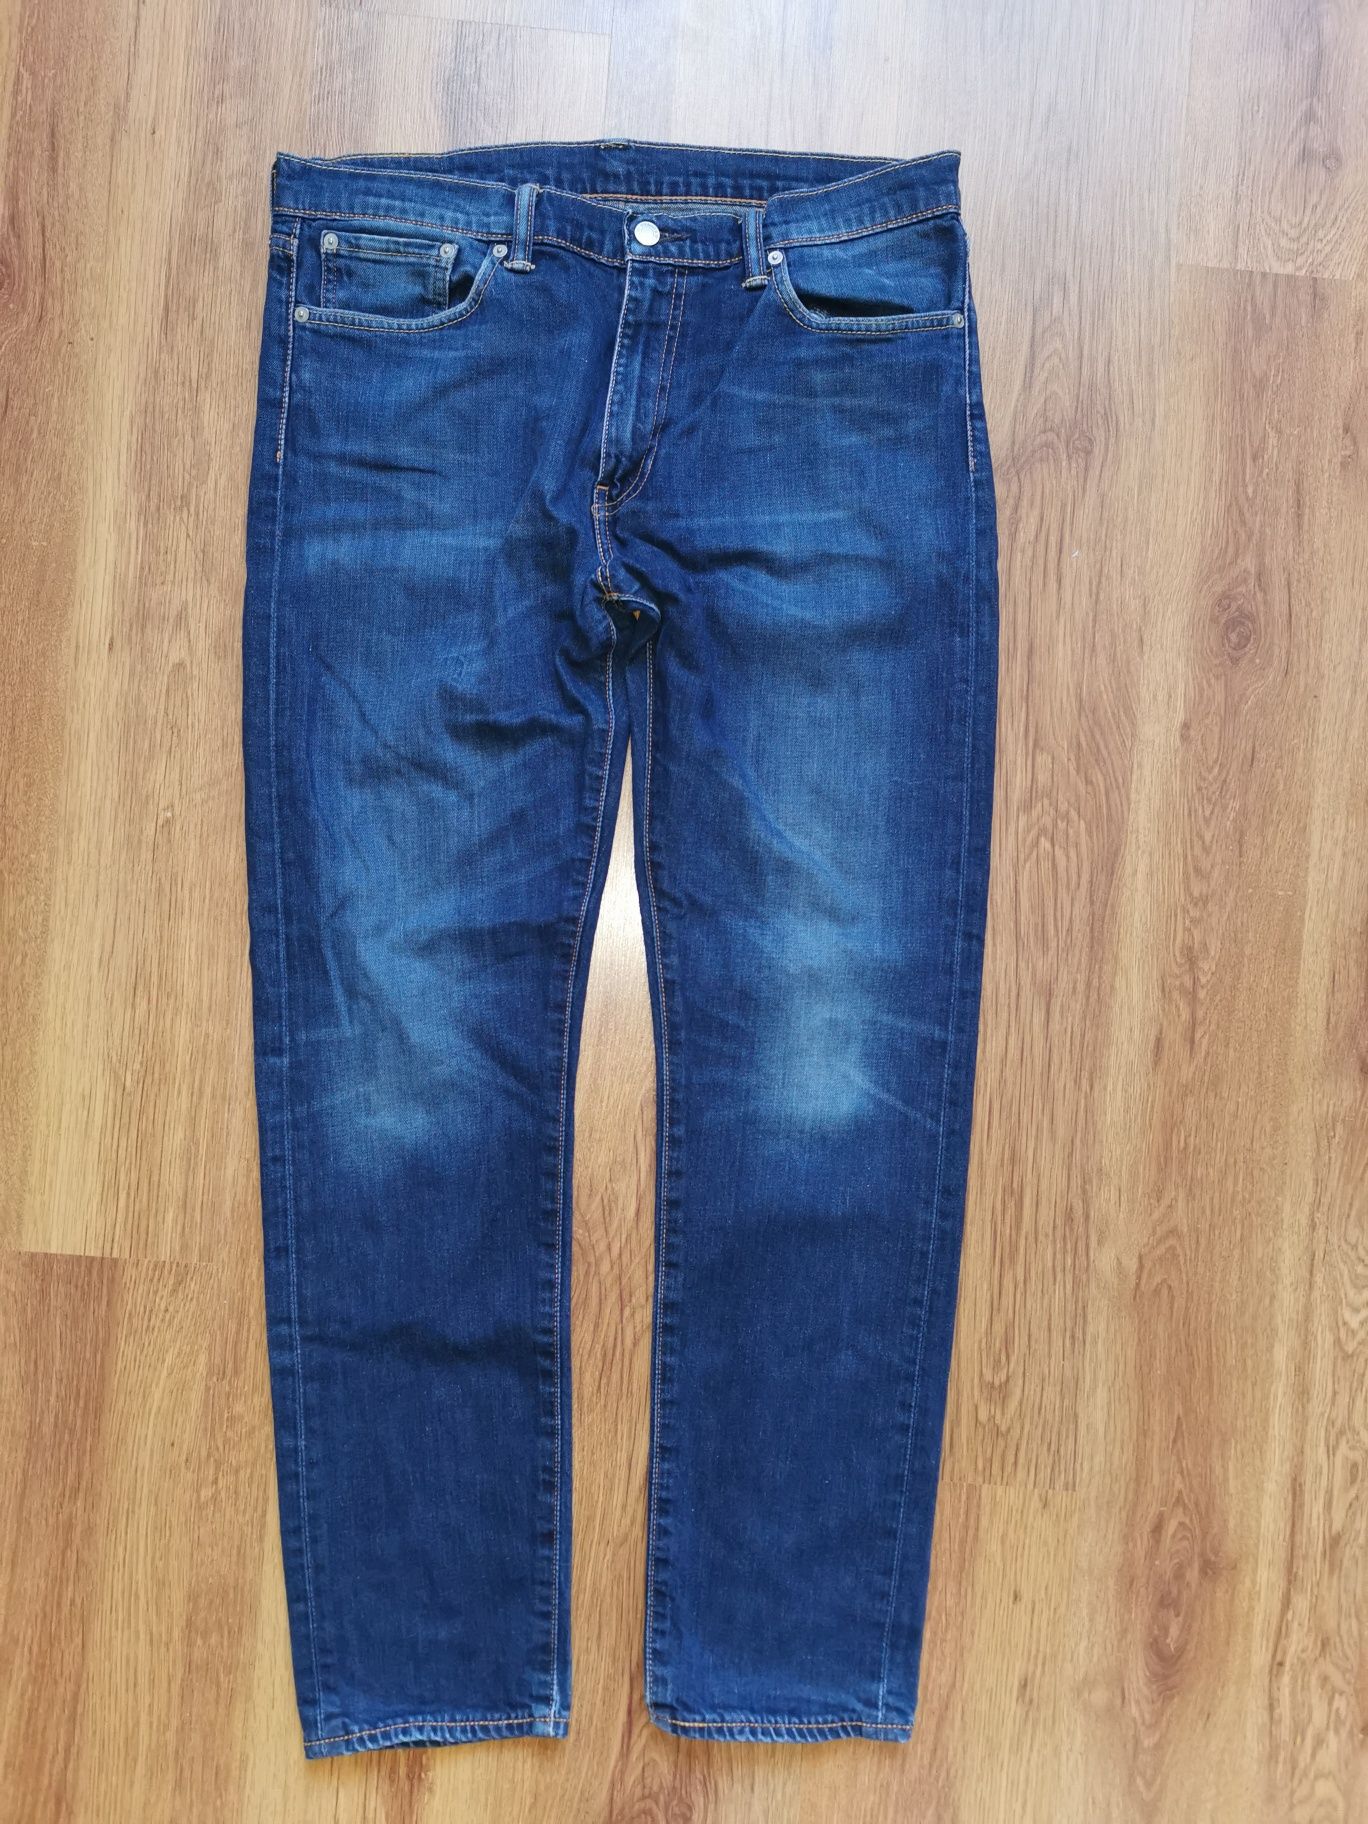 Levi's 508 W33 L32 spodnie jeansowe jeansy Levis